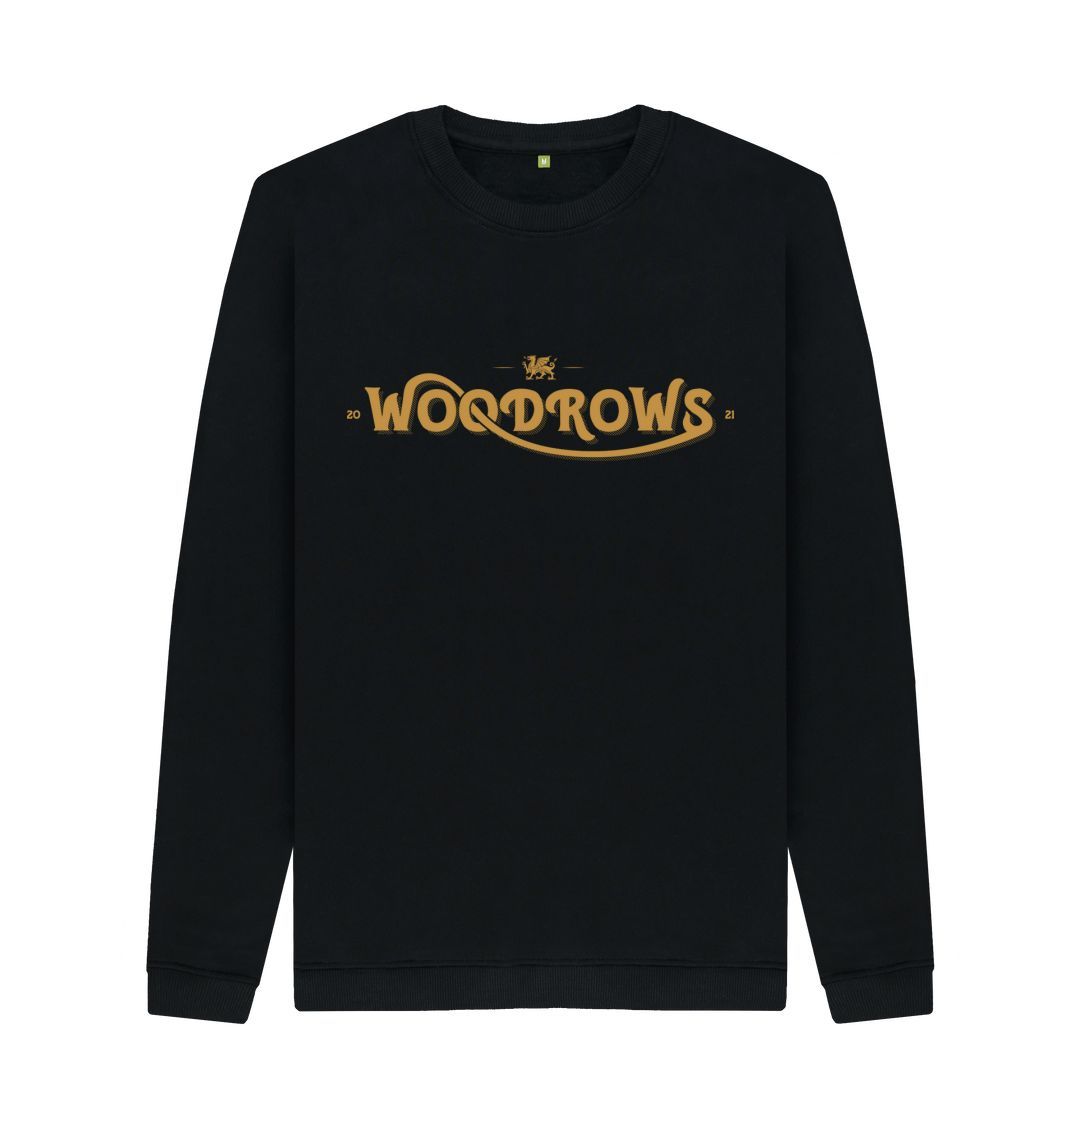 Black Woodrow's Crew Neck Sweater